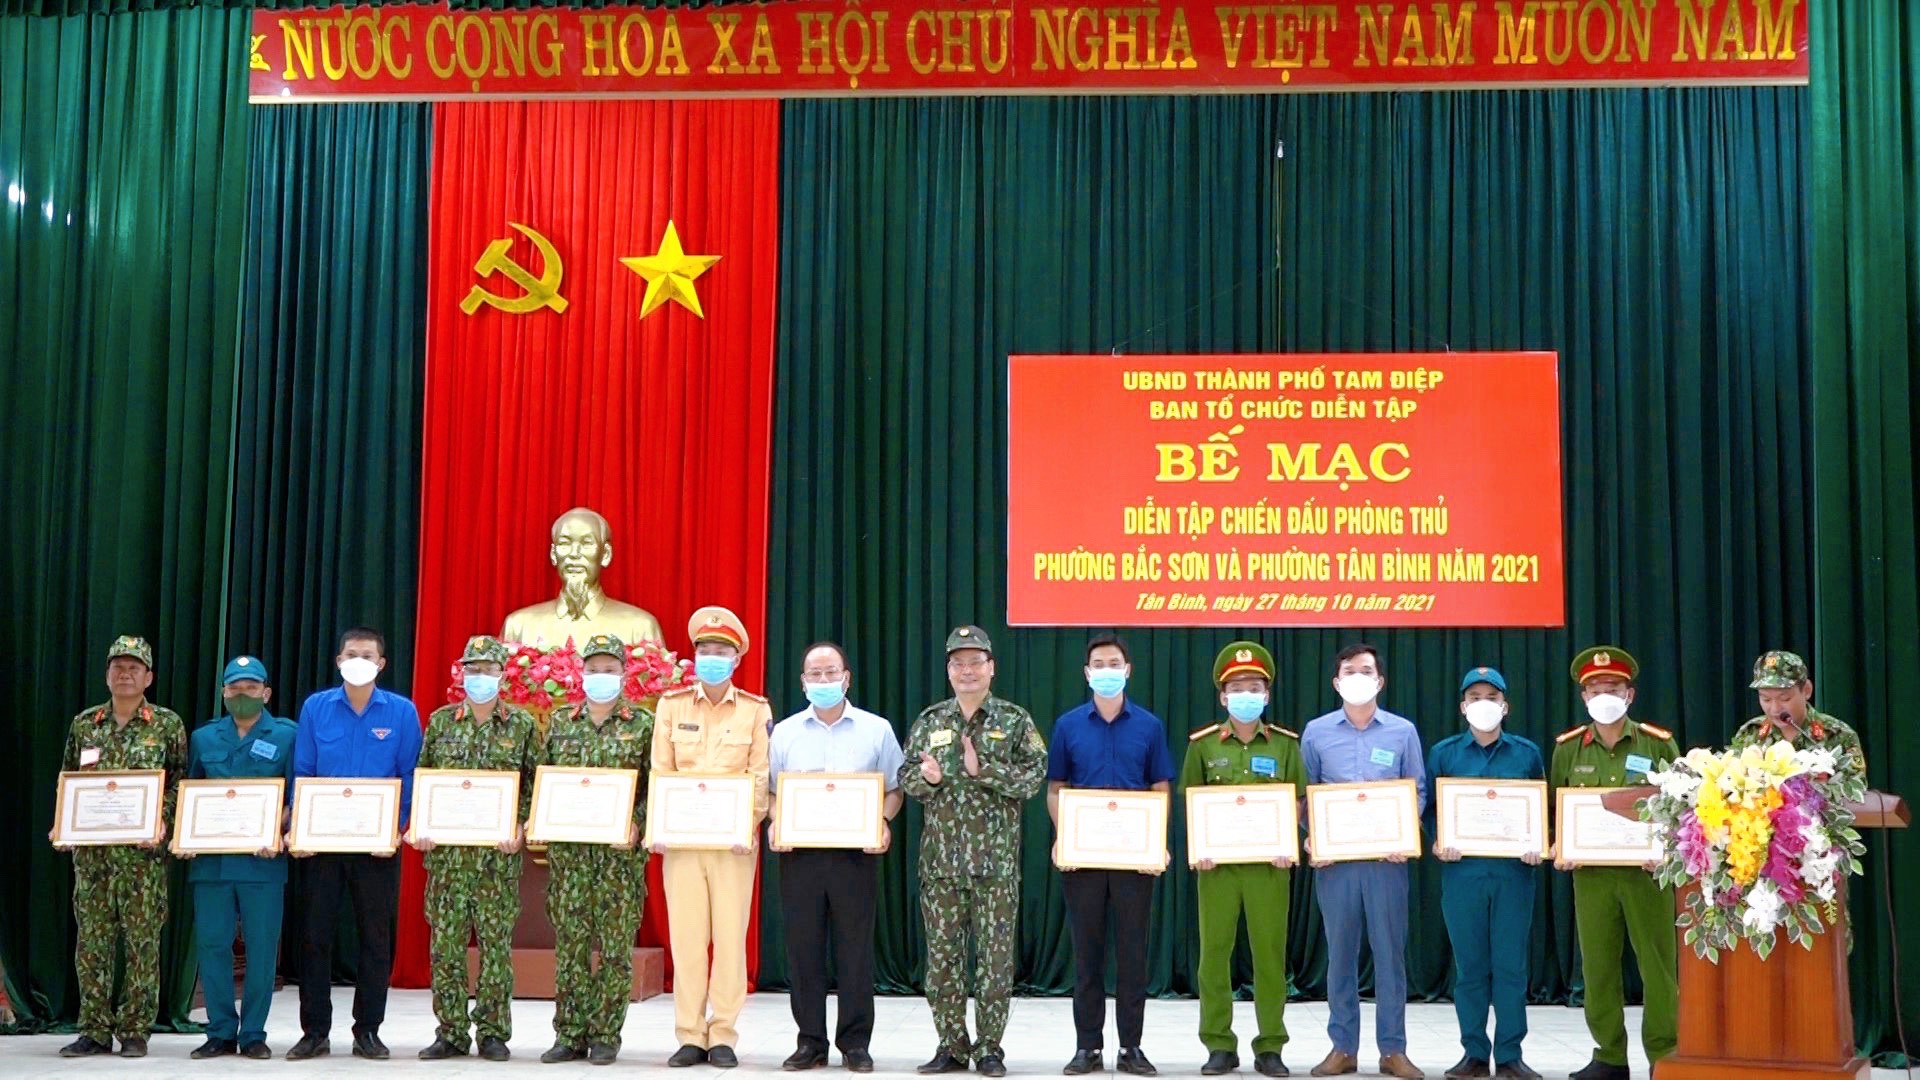 Thành phố Tam Điệp tổ chức diễn tập chiến đấu phòng thủ phường Bắc Sơn, phường Tân Bình năm 2021